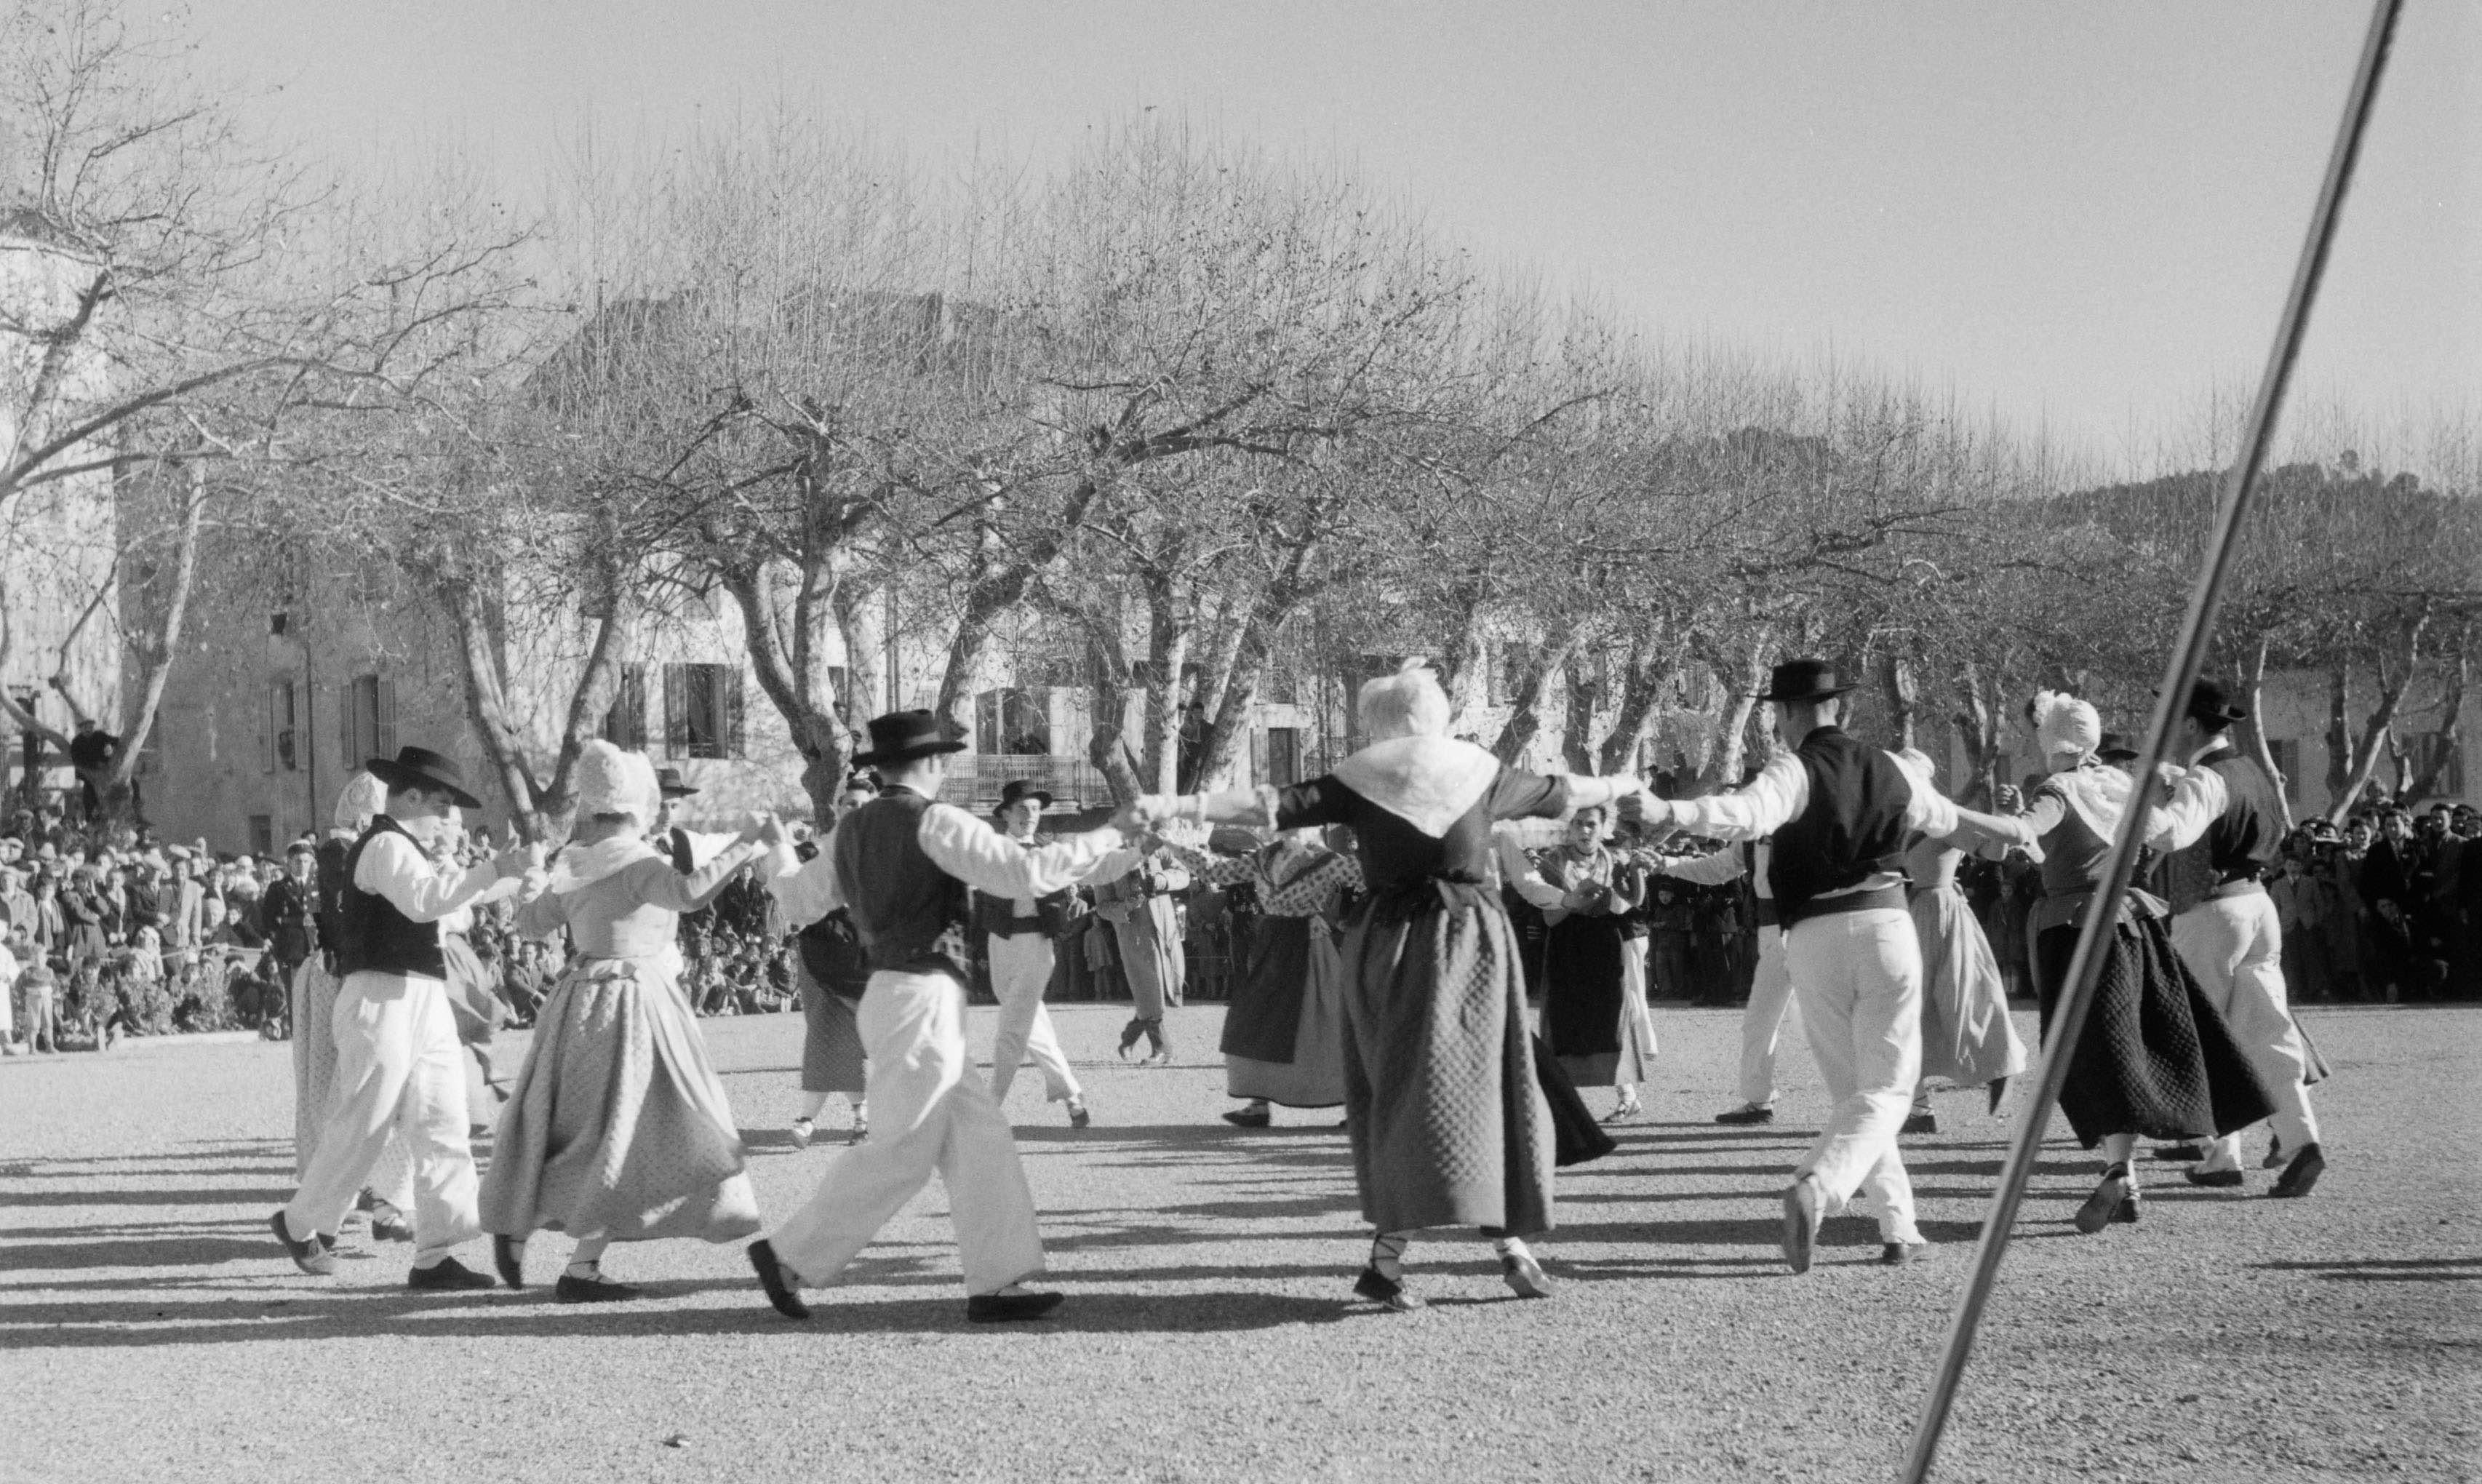 Barjols (Var), 17 janvier 1954: pendant la fête patronale de la Saint-Marcel, le groupe folklorique toulonnais "L’escolo de la Targo" danse une montagnarde sur la place de la Rouguière (cliché Pierre Soulier, Ph.1954.017.072)